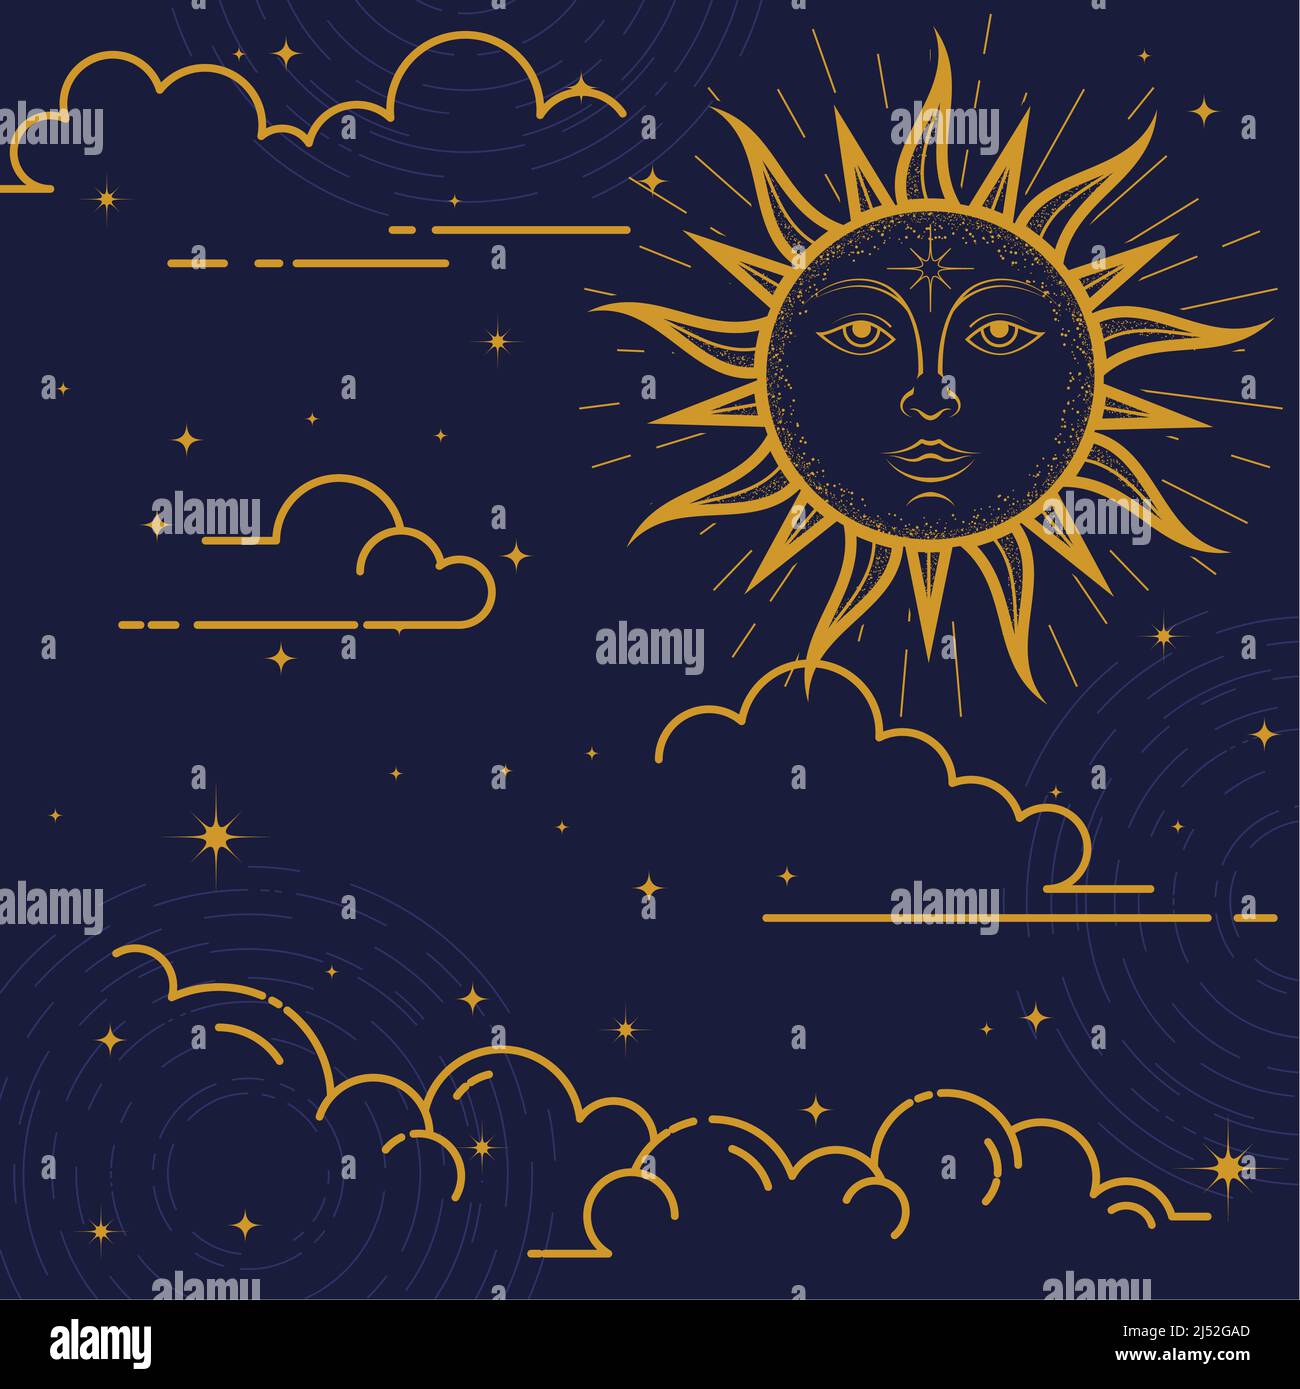 Mystischer Hintergrund, Sonne mit Gesicht, Wolken und Sterne, esoterisches und astrologisches Design, magische Sonne, Vektor Stock Vektor